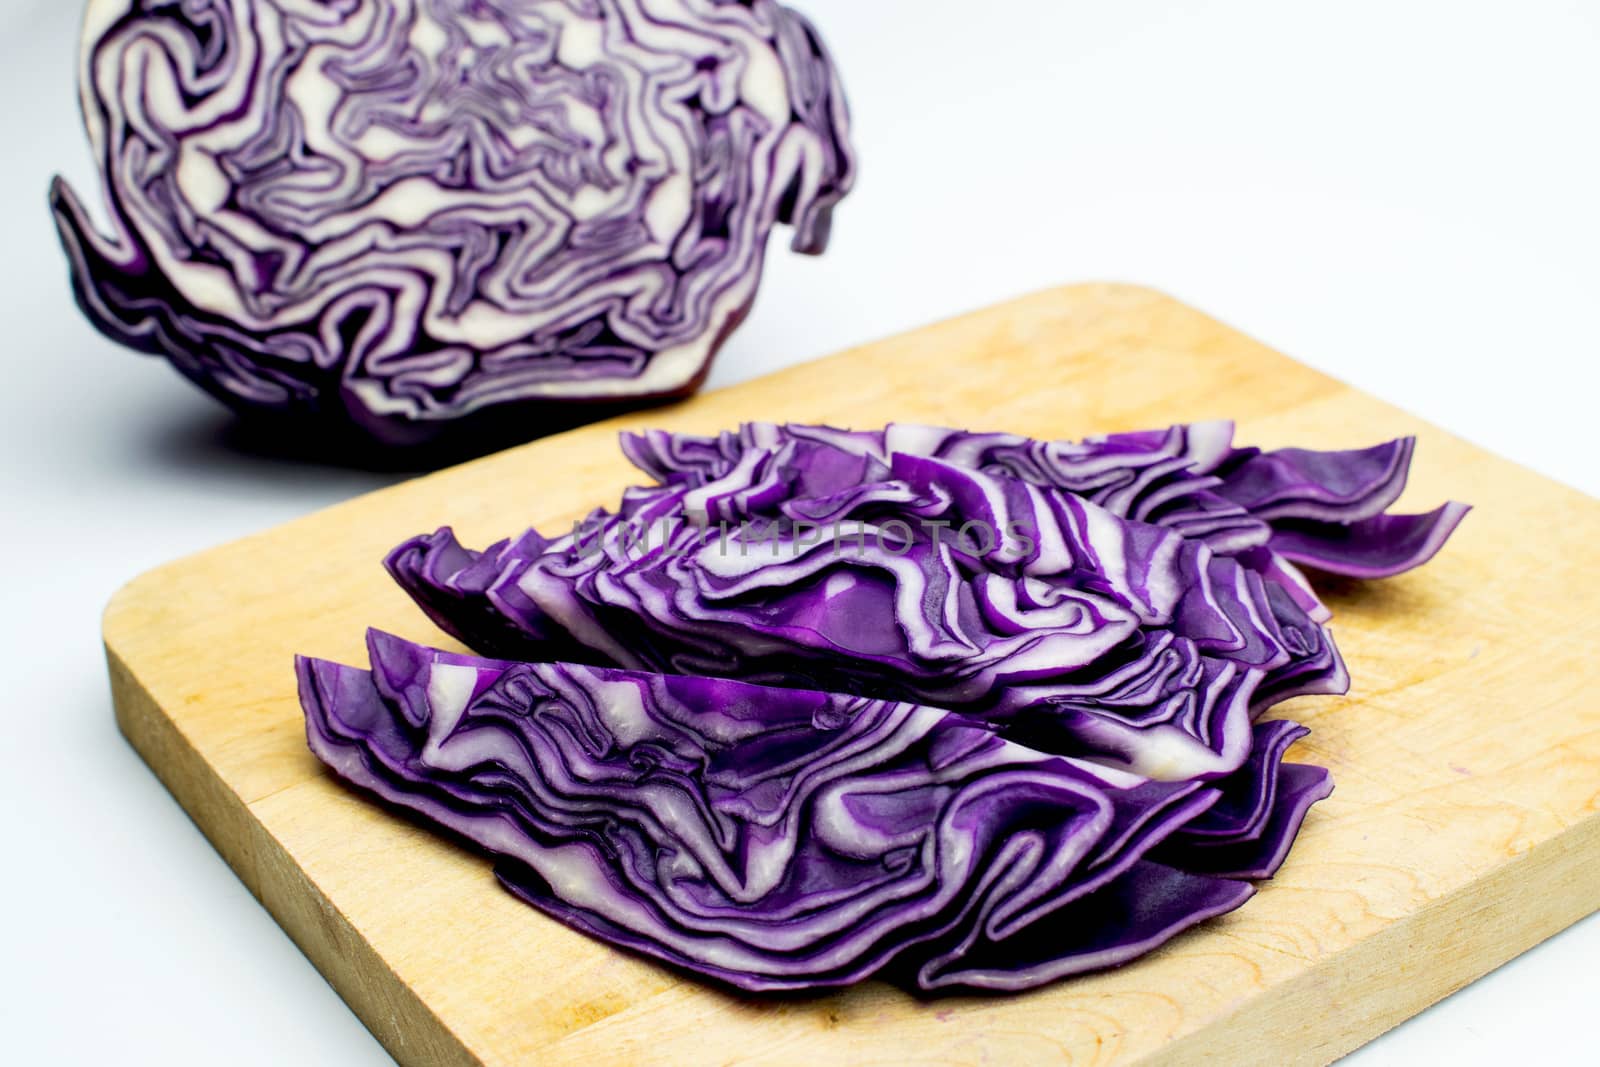 Cut coleslaw by federica_favara